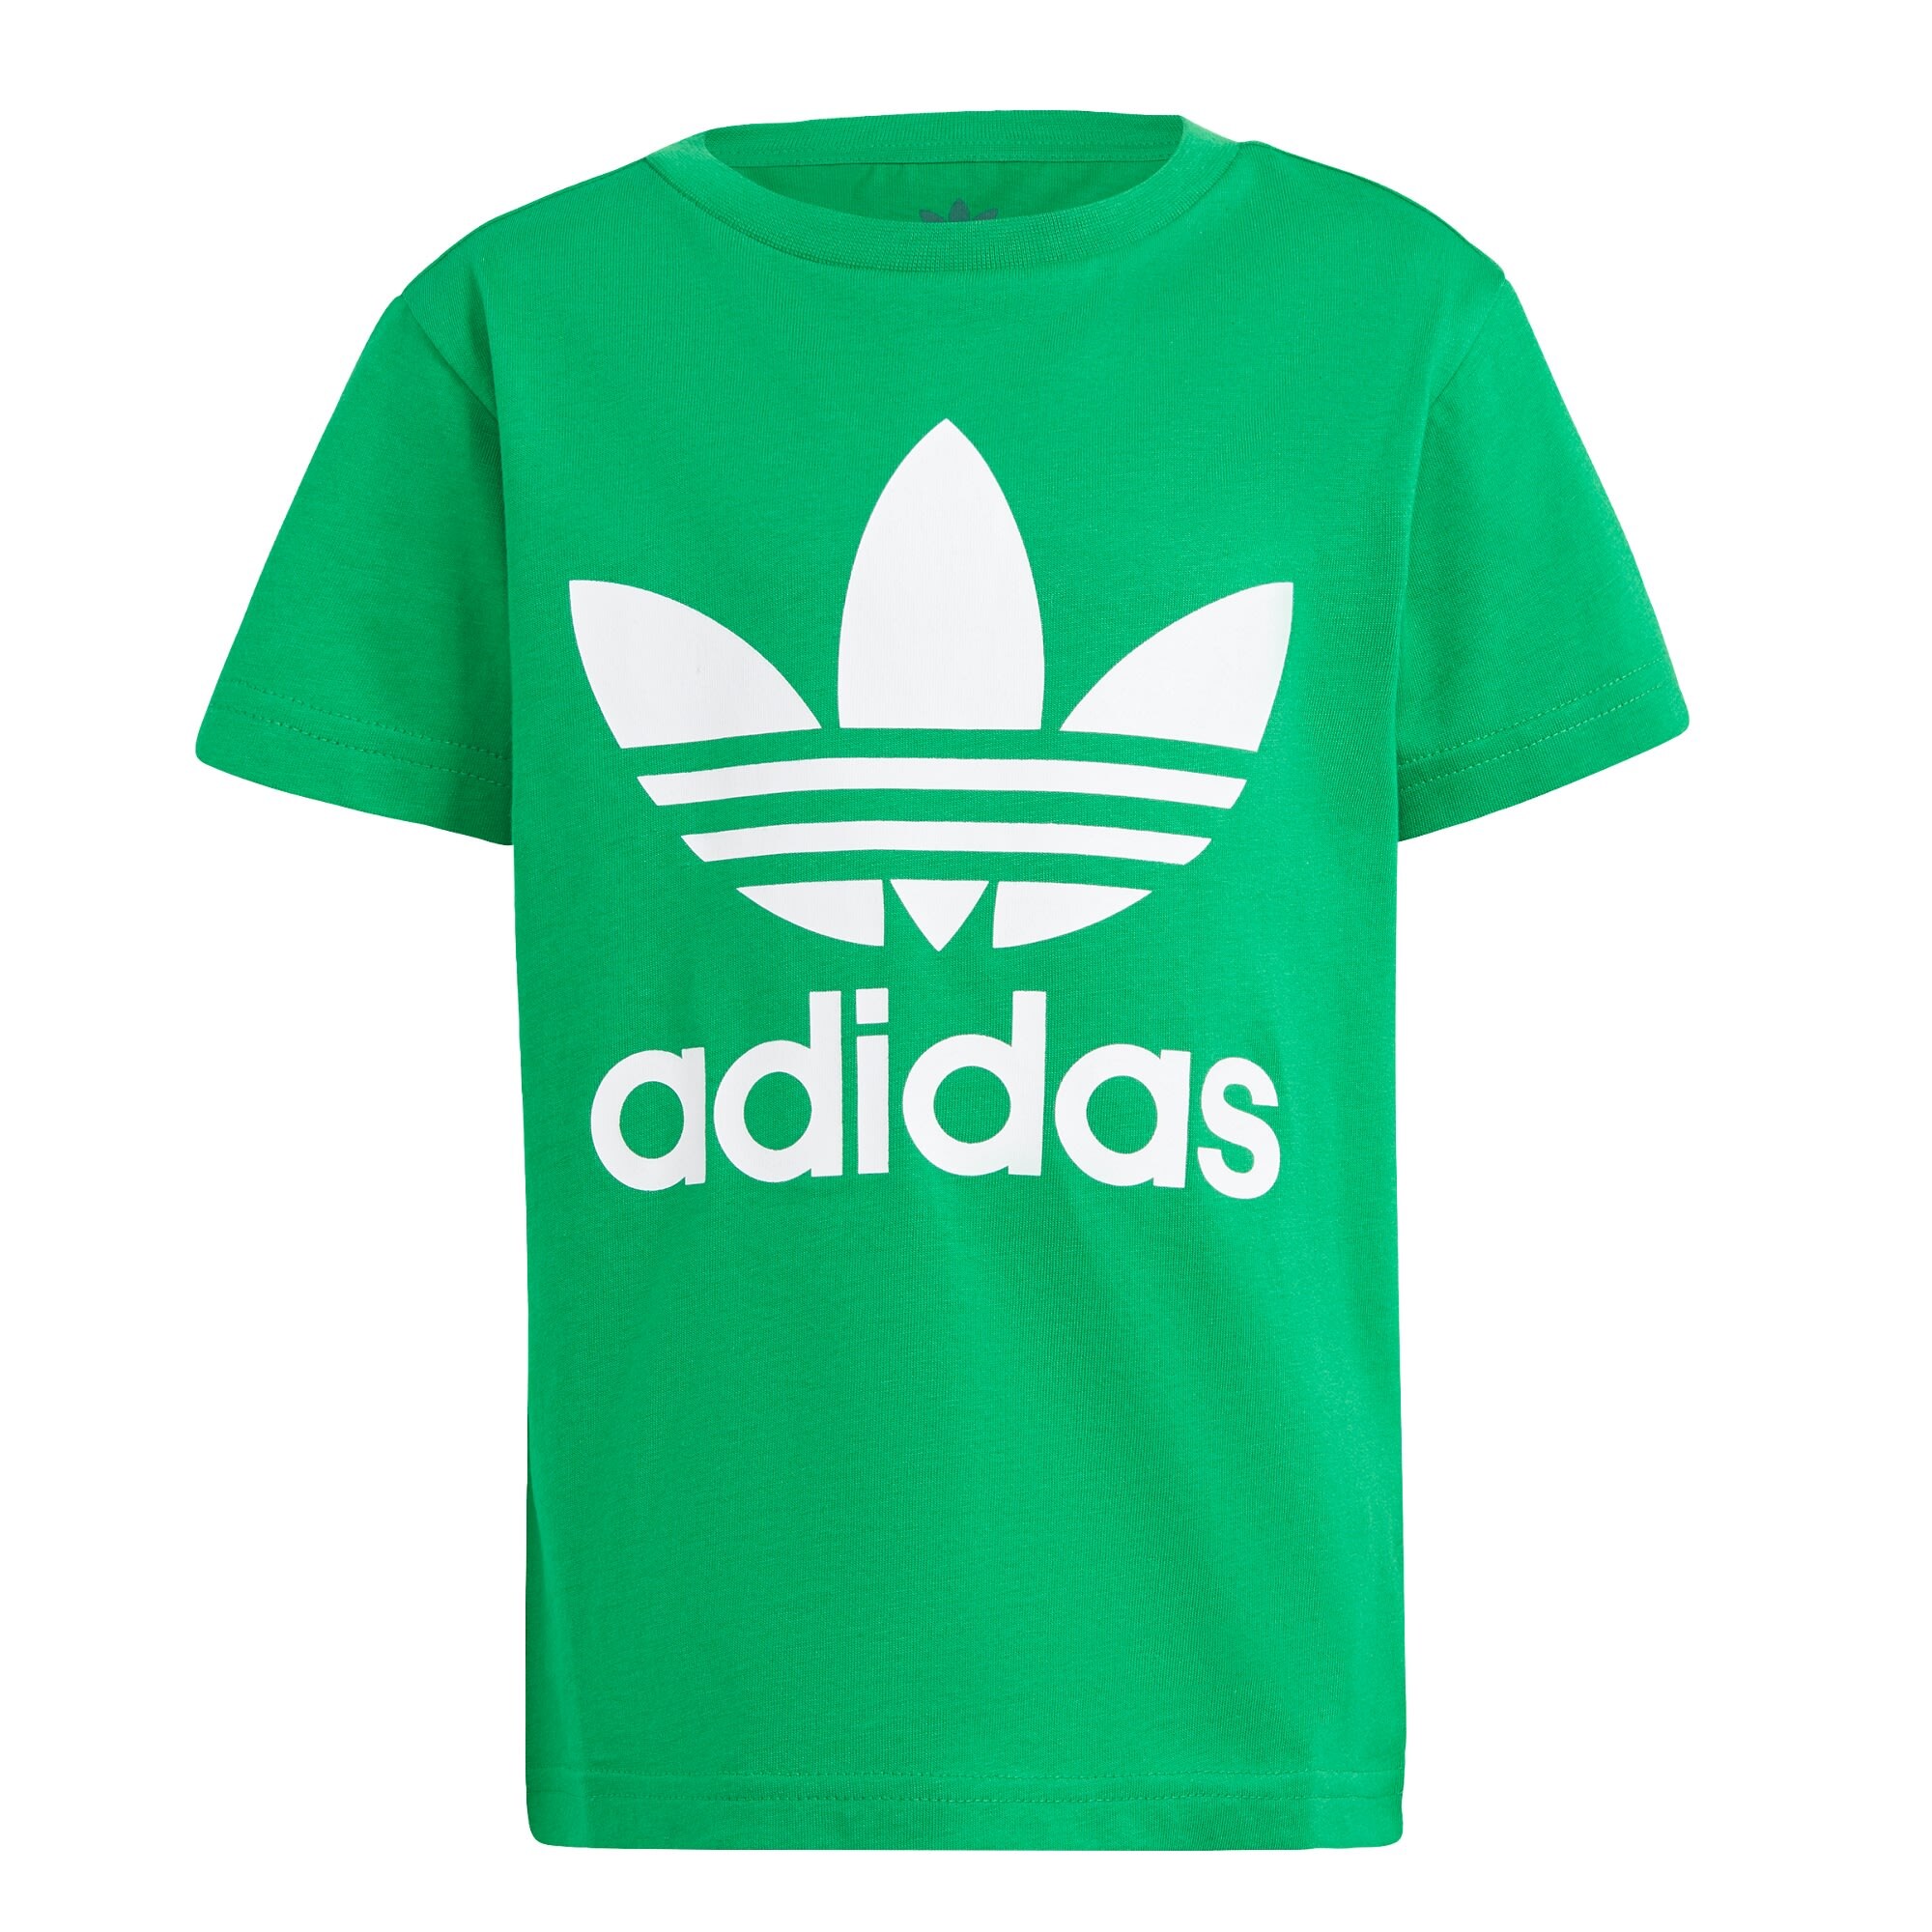 ADIDAS ORIGINALS Marškinėliai 'Adicolor Trefoil' žolės žalia / balta